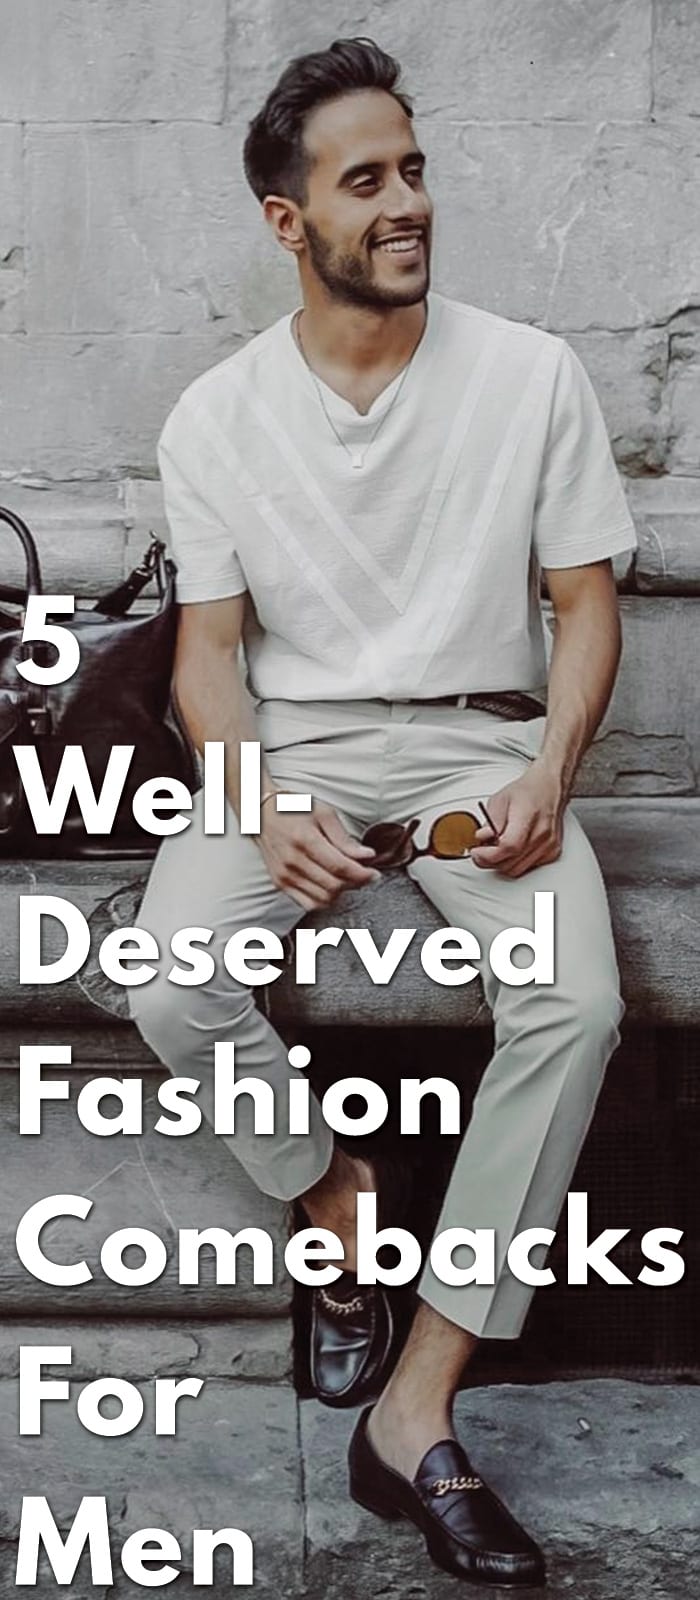 5-Well-Deserved-Fashion-Comebacks-For-Men.